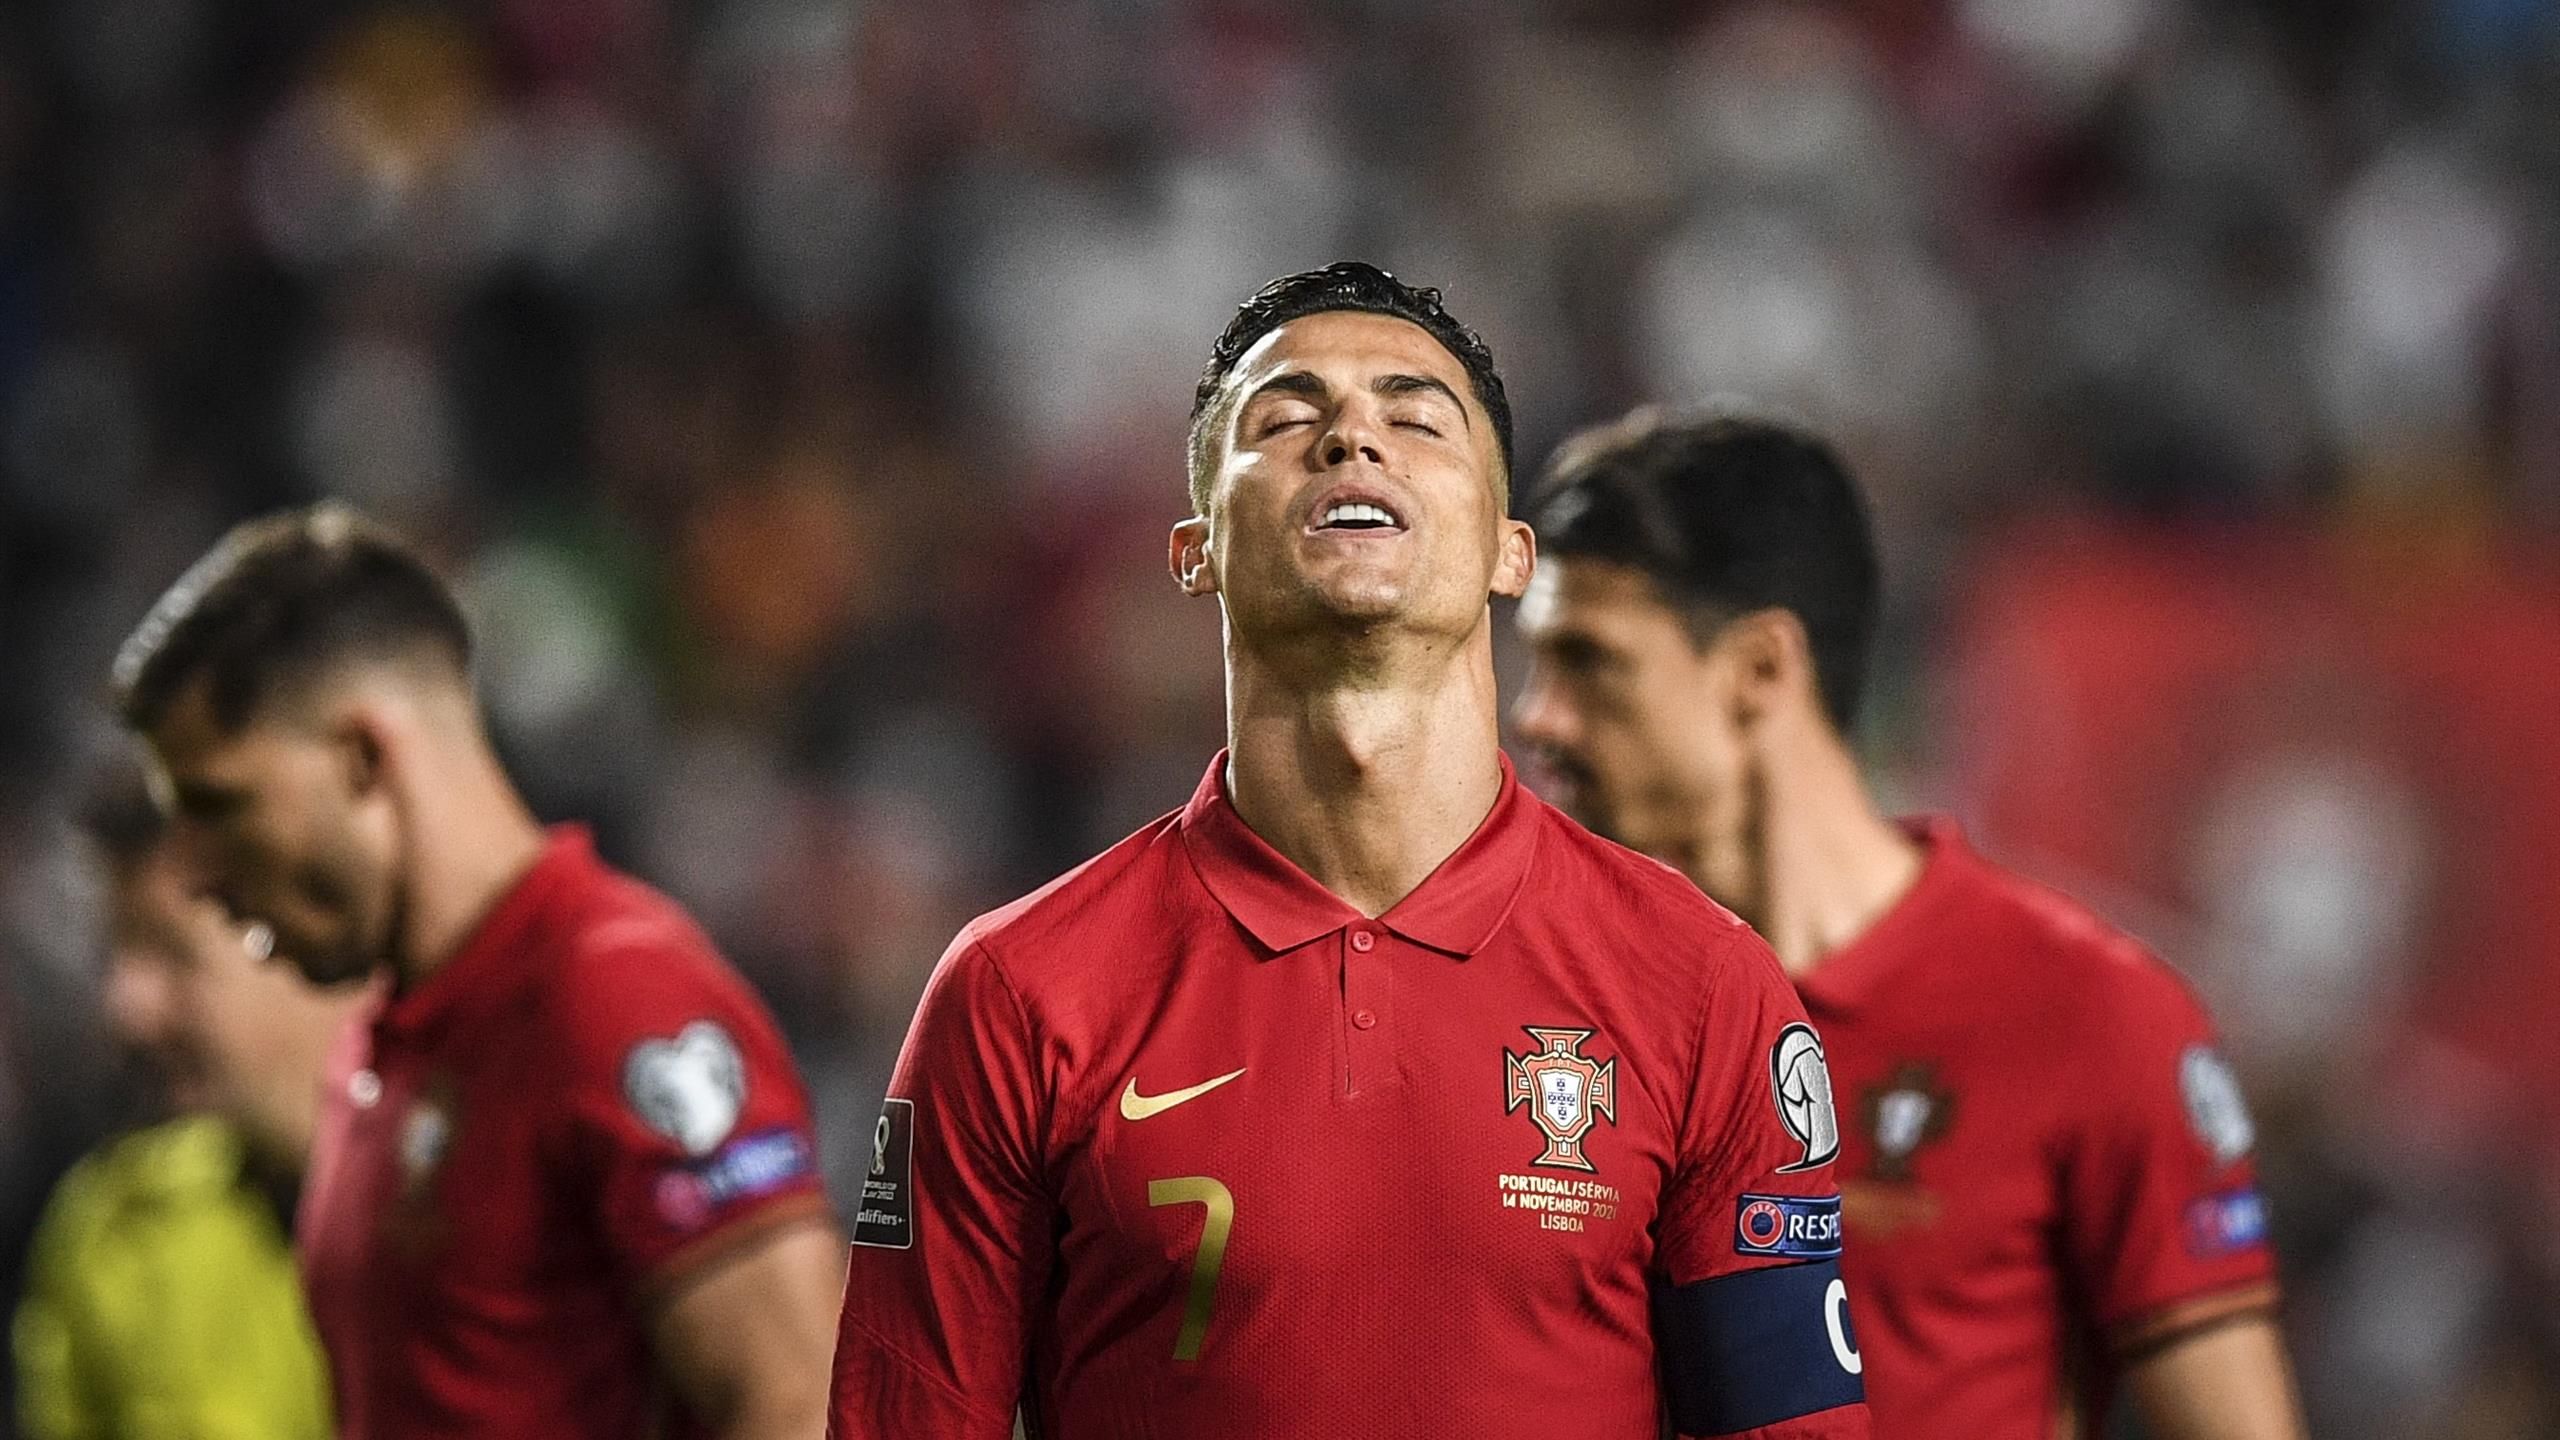 Football Portugal Ronaldo GIF Find On GIFER